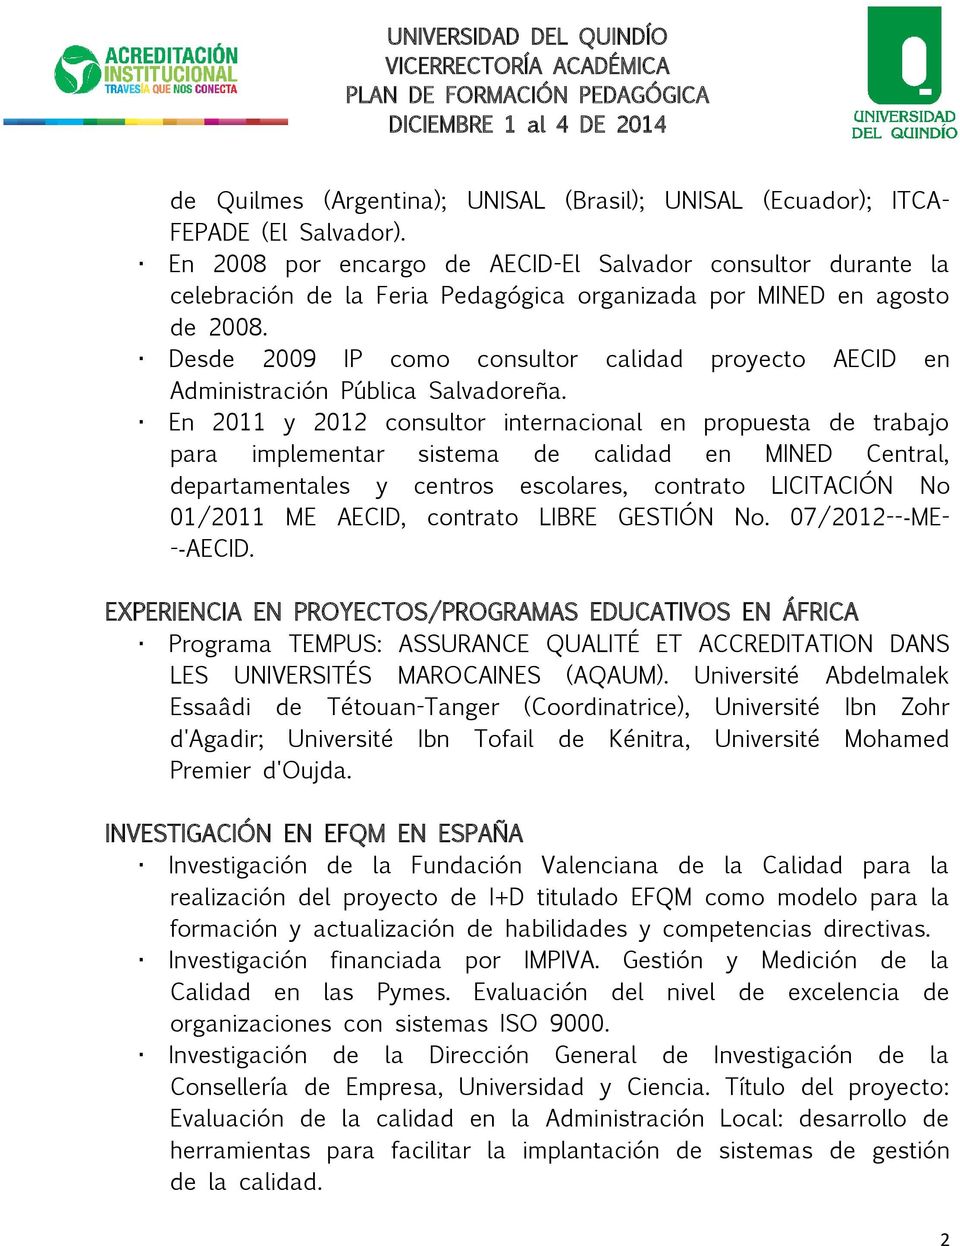 Desde 2009 IP como consultor calidad proyecto AECID en Administración Pública Salvadoreña.